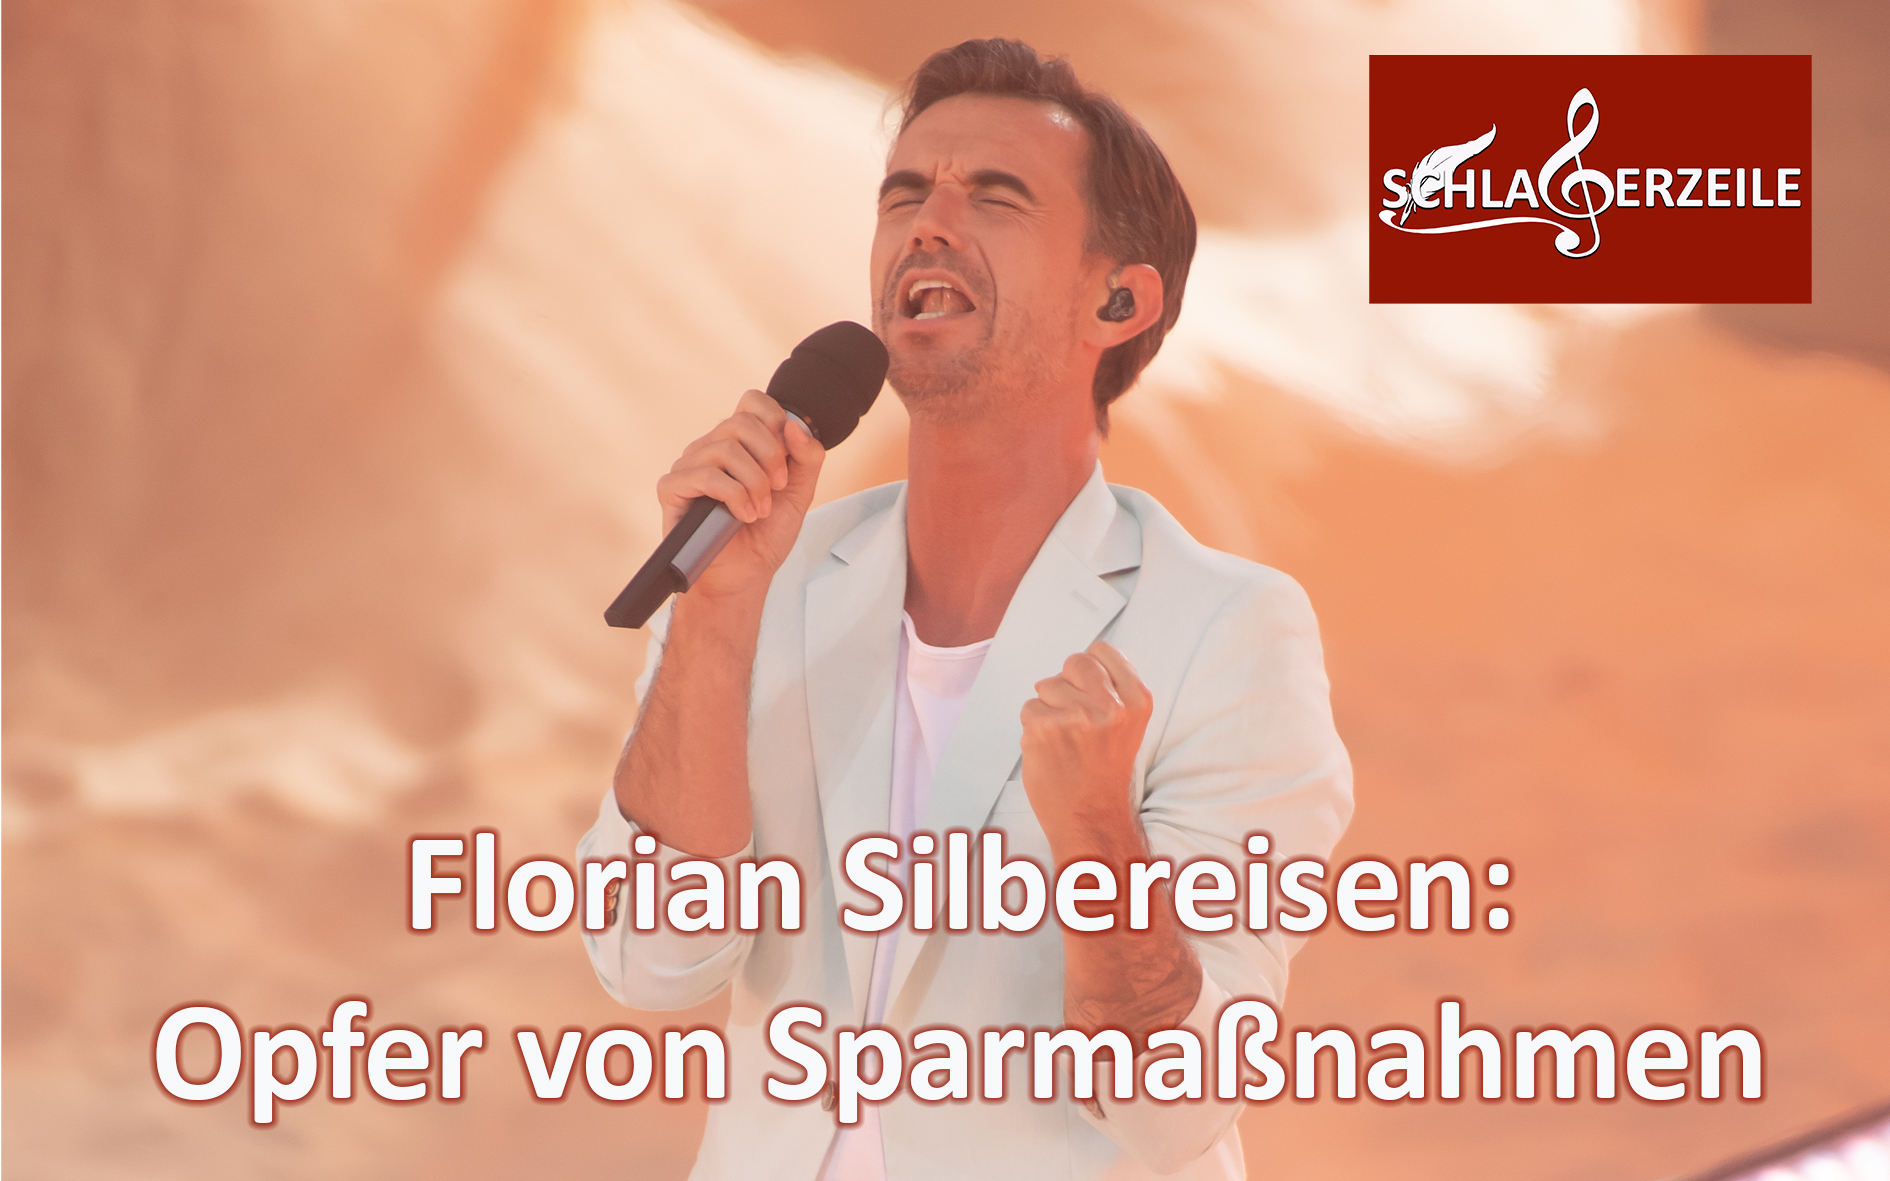 MDR spart, Florian Silbereisen